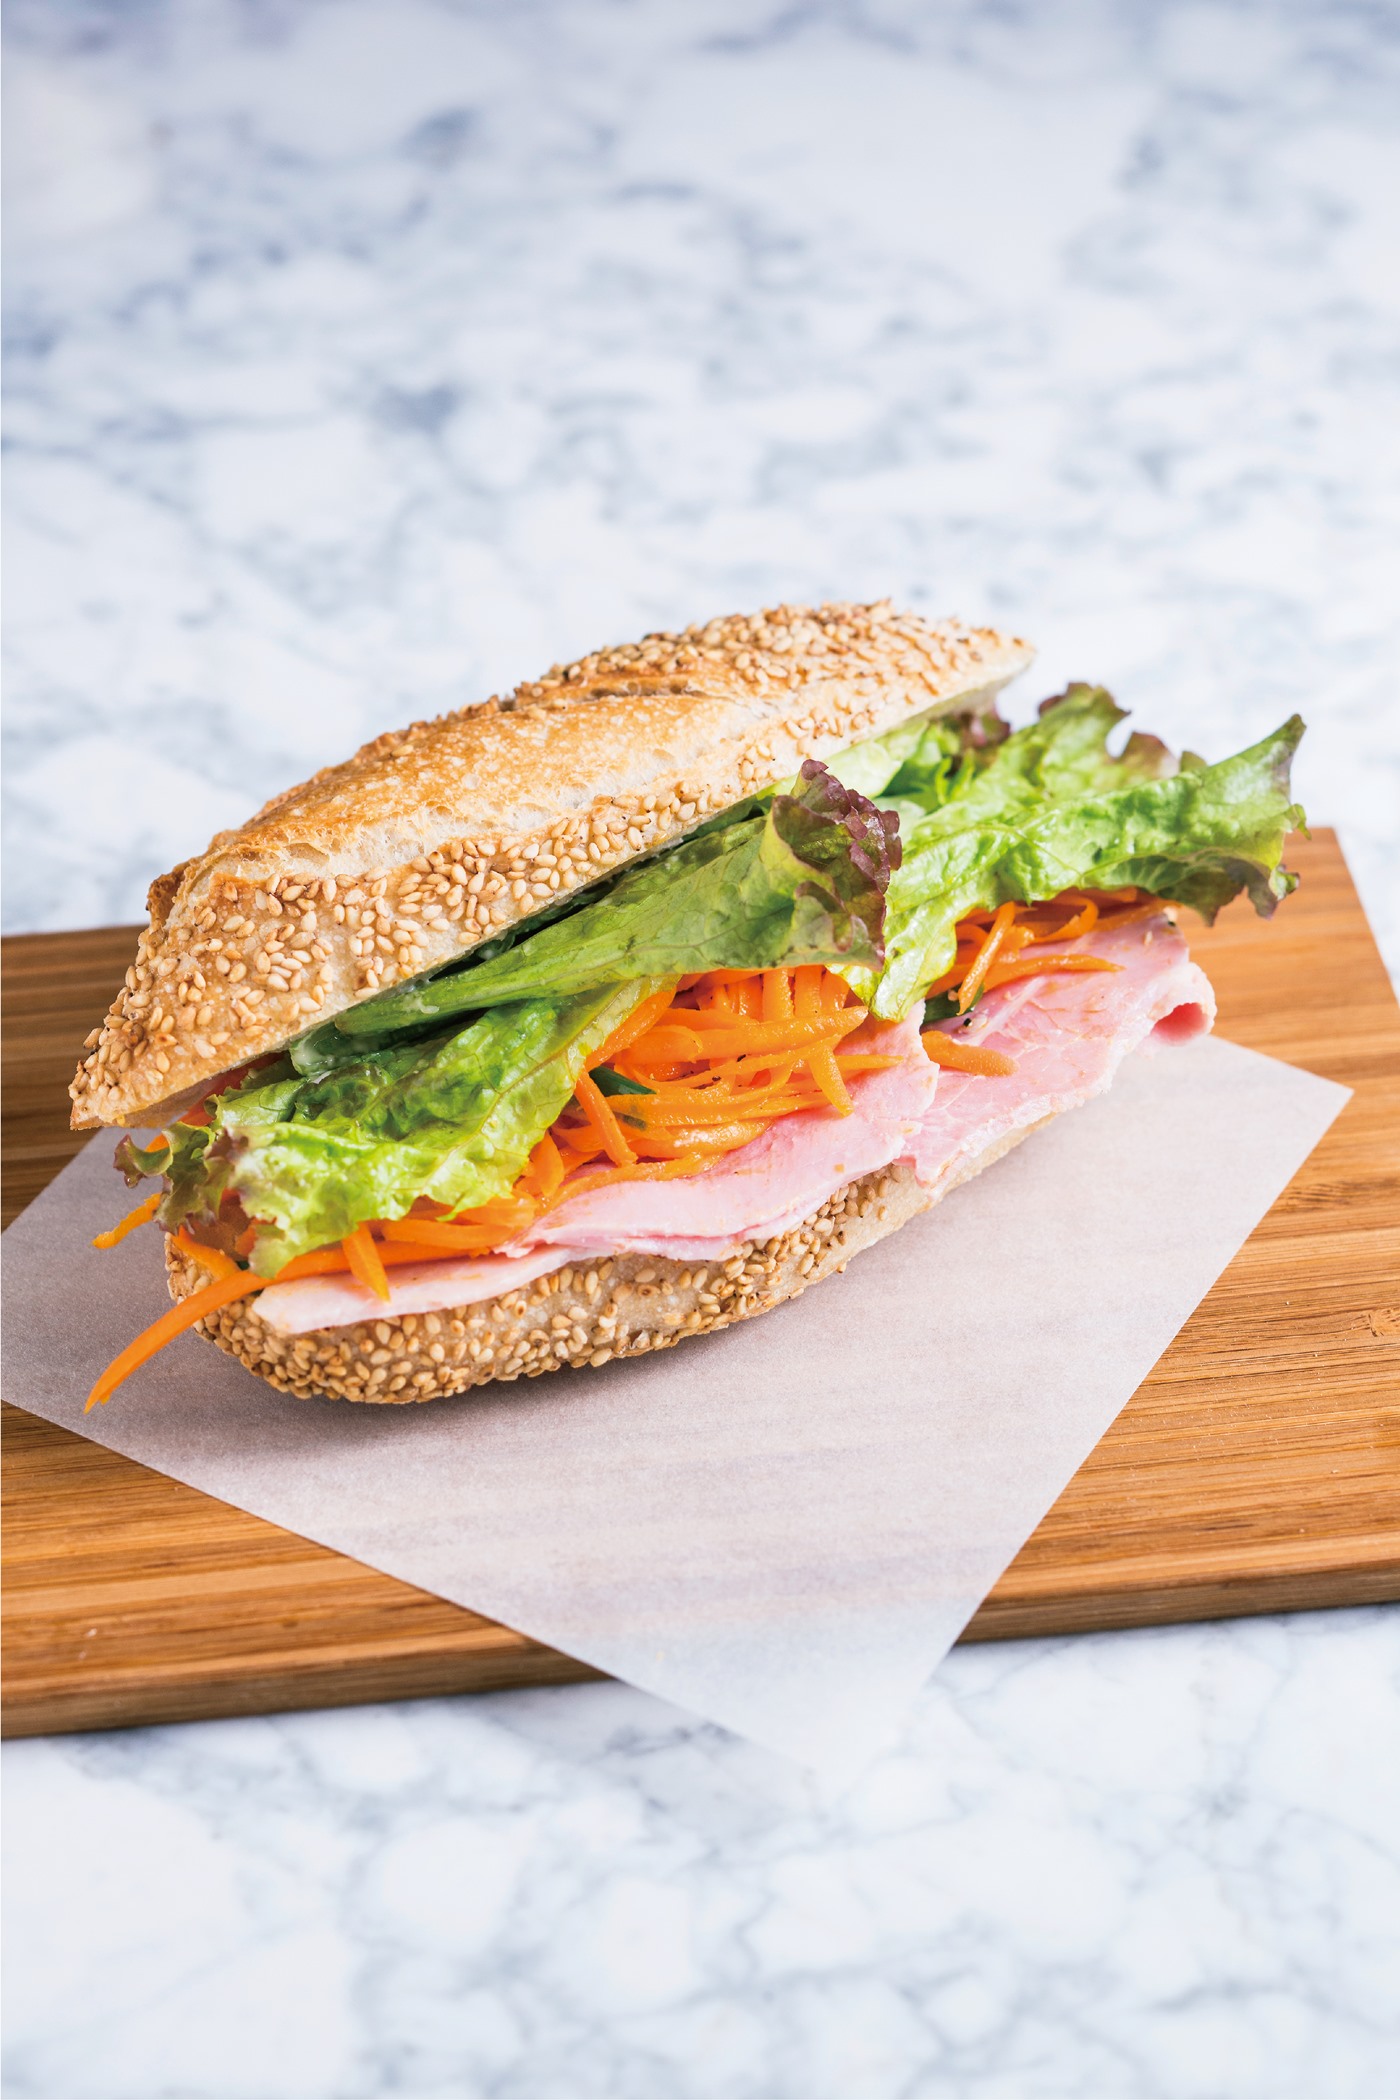 今池 Craft Sandwich クラフトサンドウィッチ の野菜たっぷりのサンドイッチ 名古屋 日刊ケリー